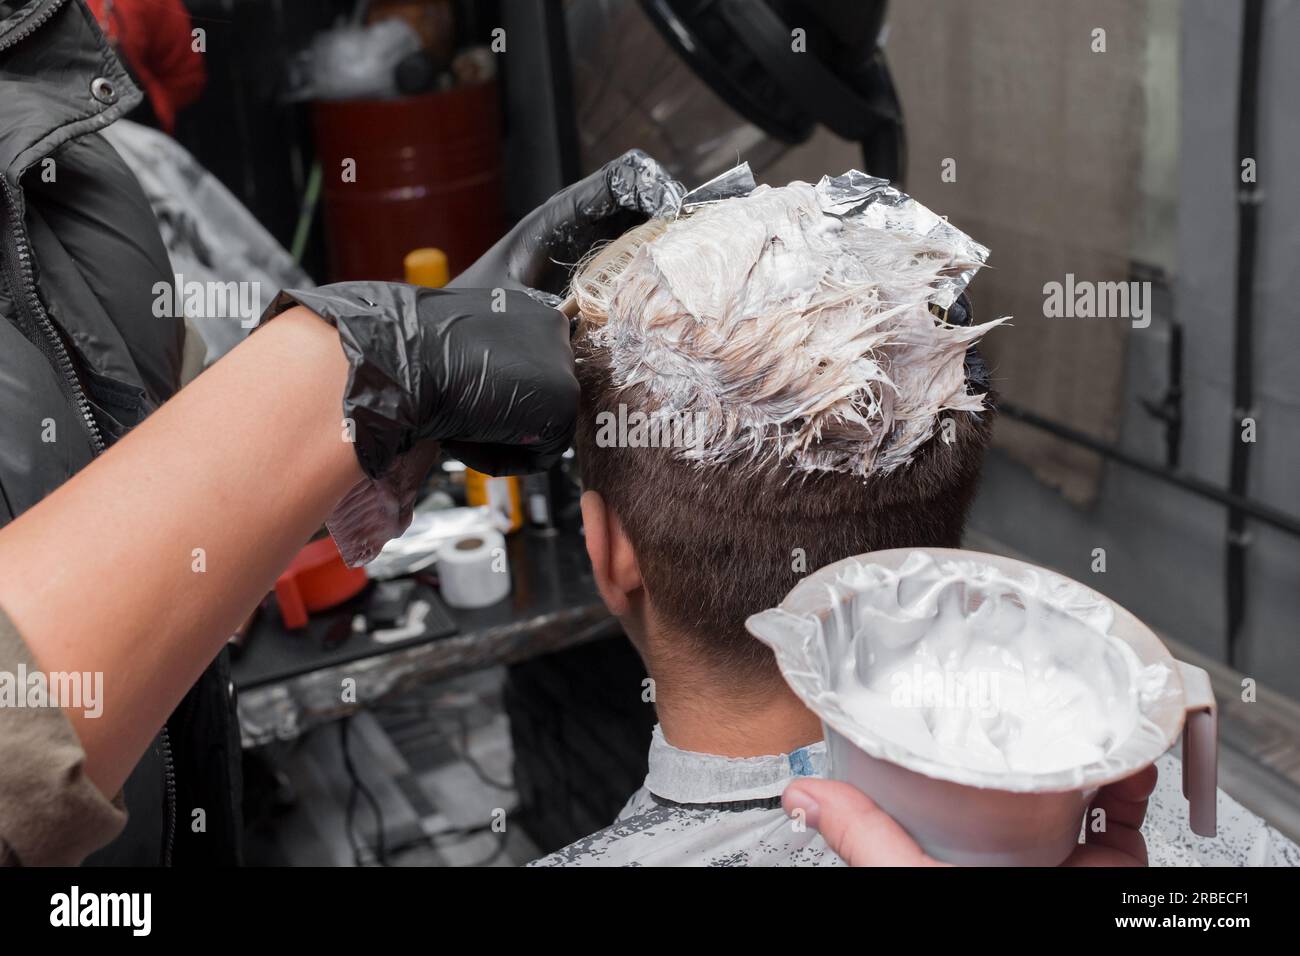 Mani di un barbiere professionista in guanti nel processo di colorazione dei capelli con tintura al lavoro in un parrucchiere. Foto Stock